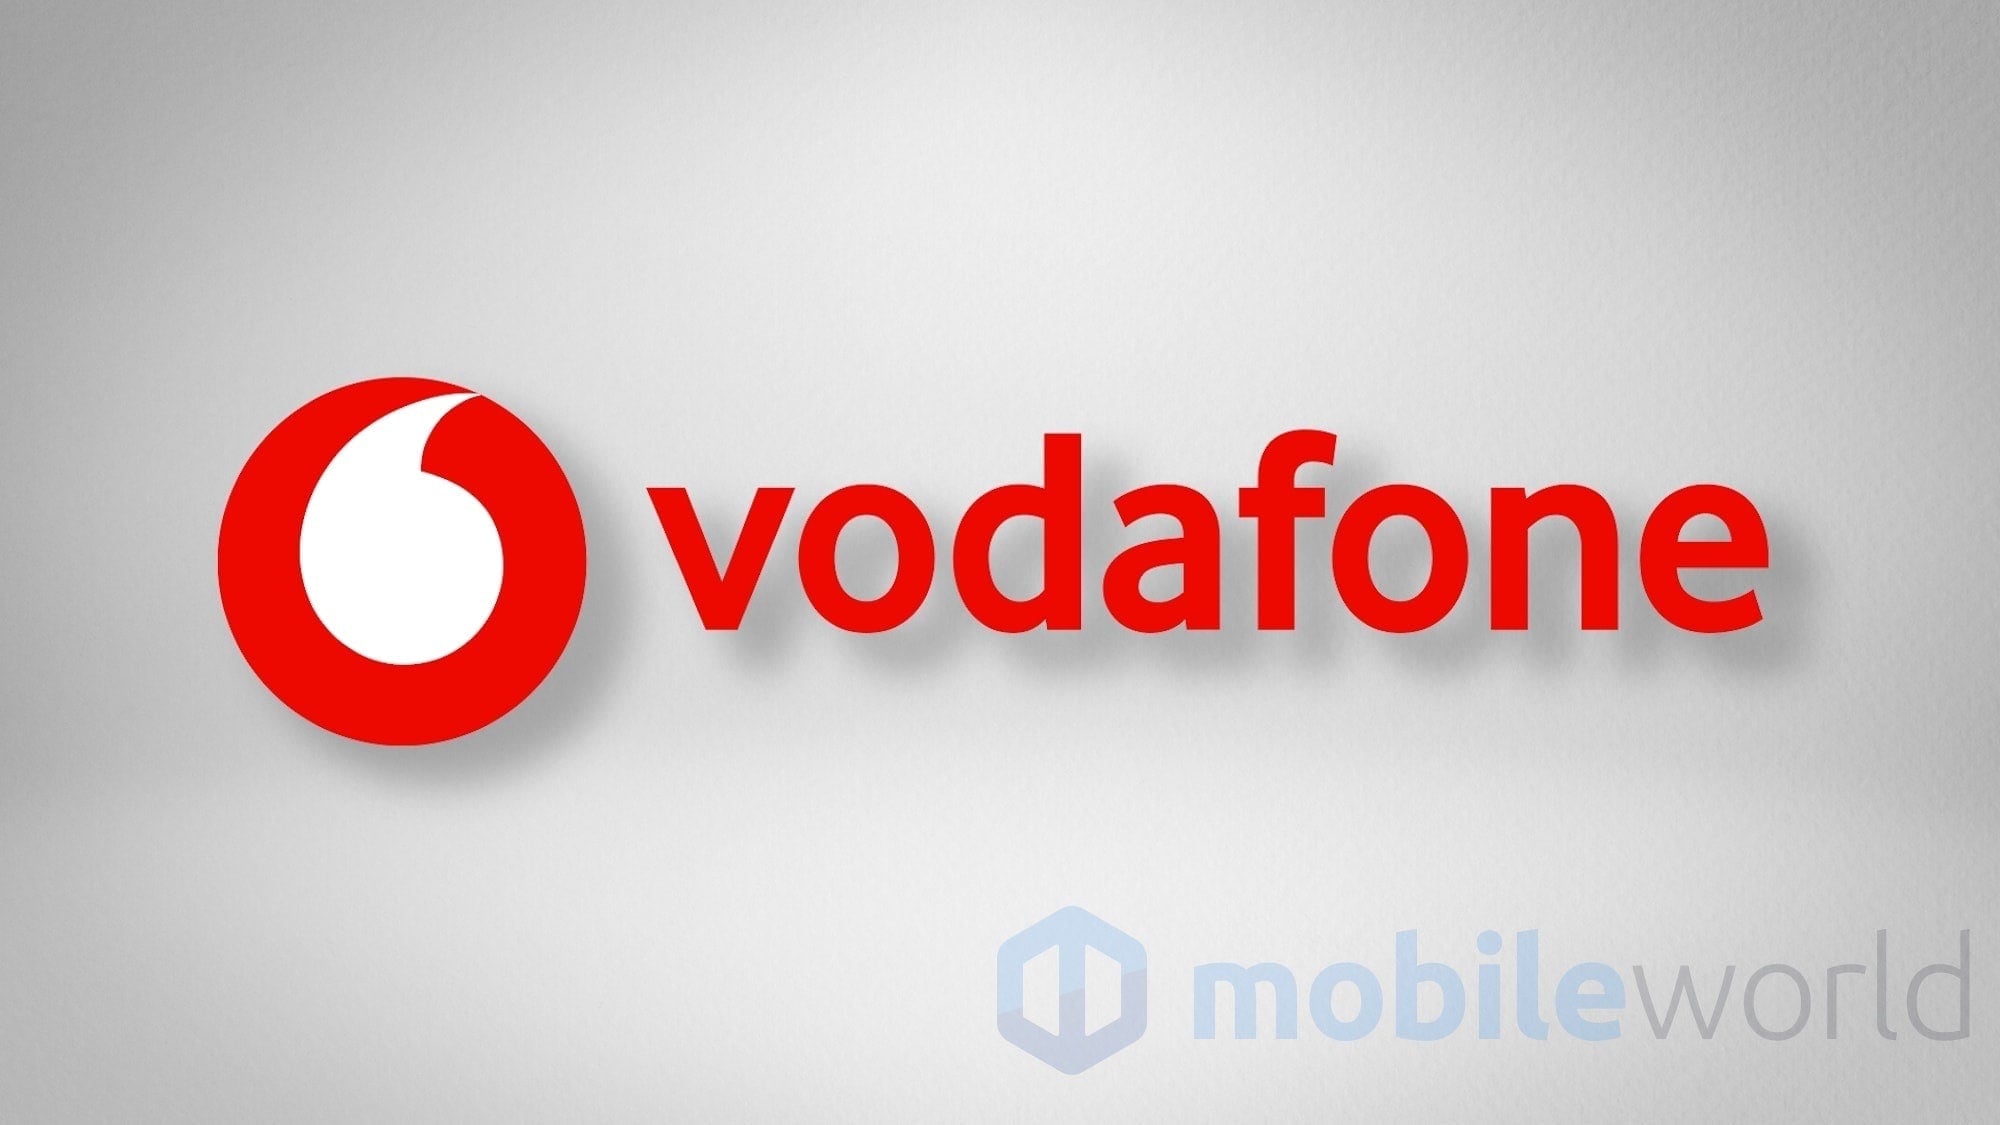 Vodafone lancia la sua offerta per il Bonus 500€: ecco la Vodafone Internet Unlimited Voucher